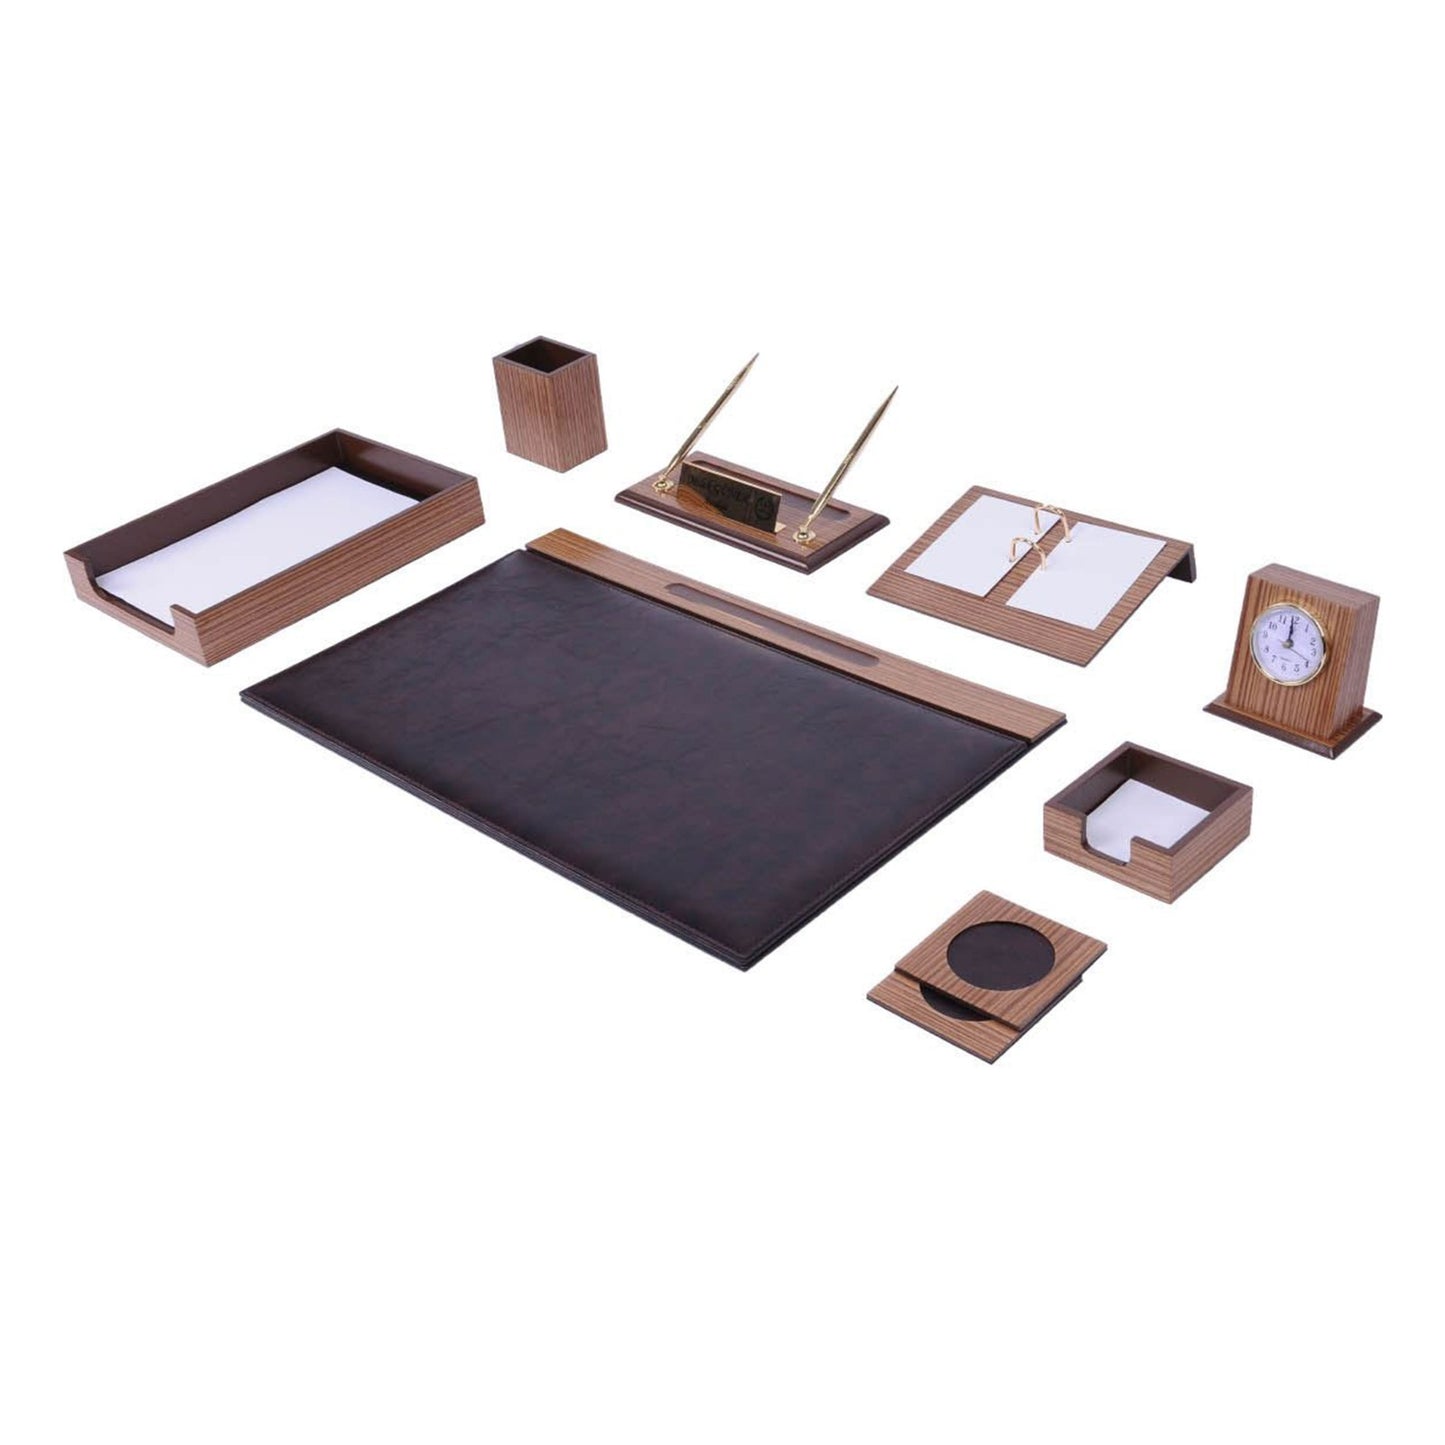 MOOG Zebrona Leather Desk Organizer Set, Desk Accessories, Desk Set Vintage, Leather Desk Pad Large, Desk Set with Blotter, Leather Desk Tray - 11 PCS